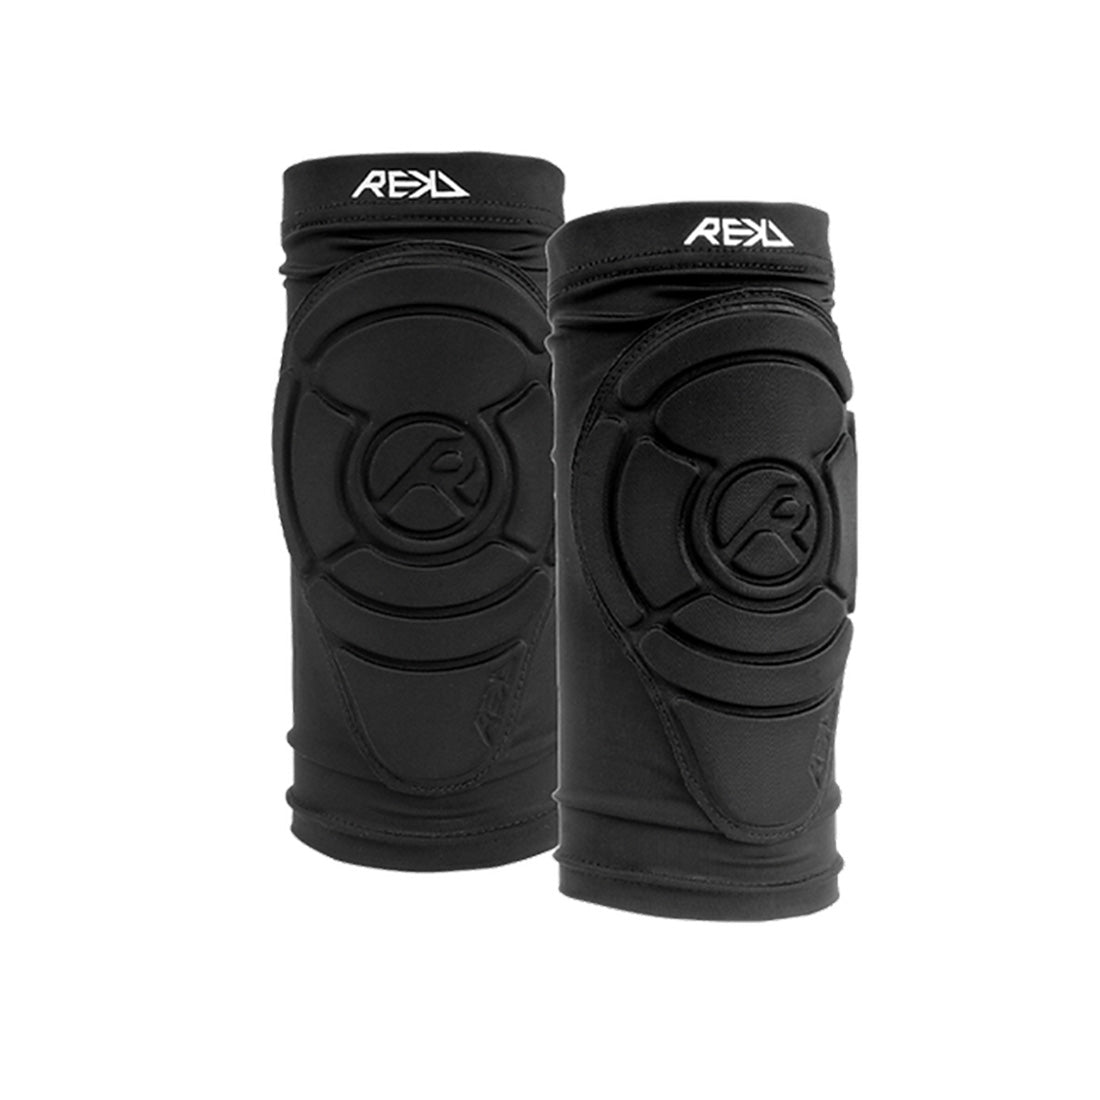 REKD Pro Knee Gaskets Protective Gear